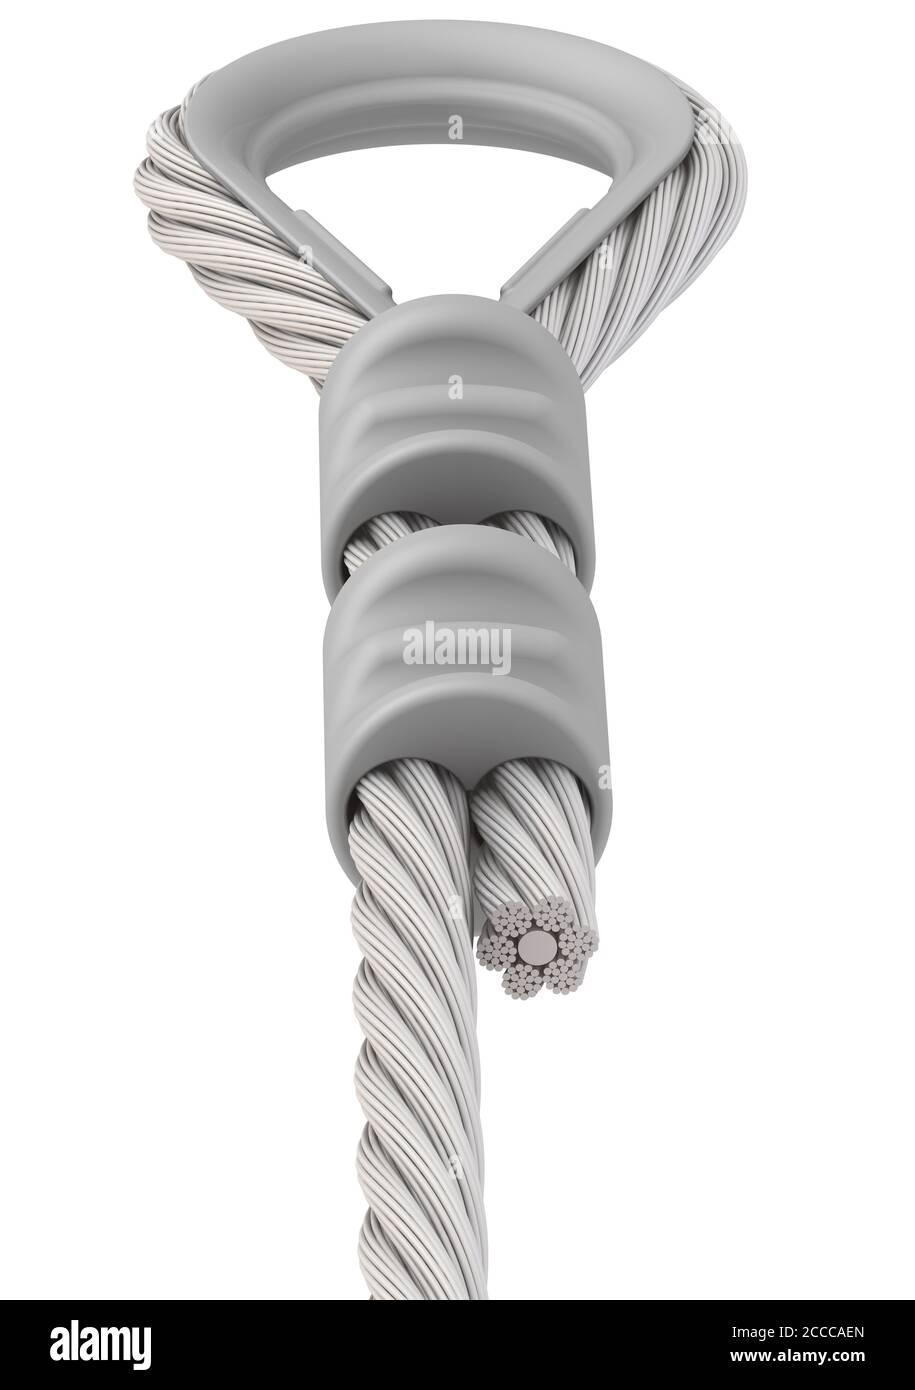 Befestigung des Seils. Schleife. Die Befestigung der Enden des Seils an der Schlingen mit dem Handschuh und der Crimphülse. 3D-Illustration Stockfoto